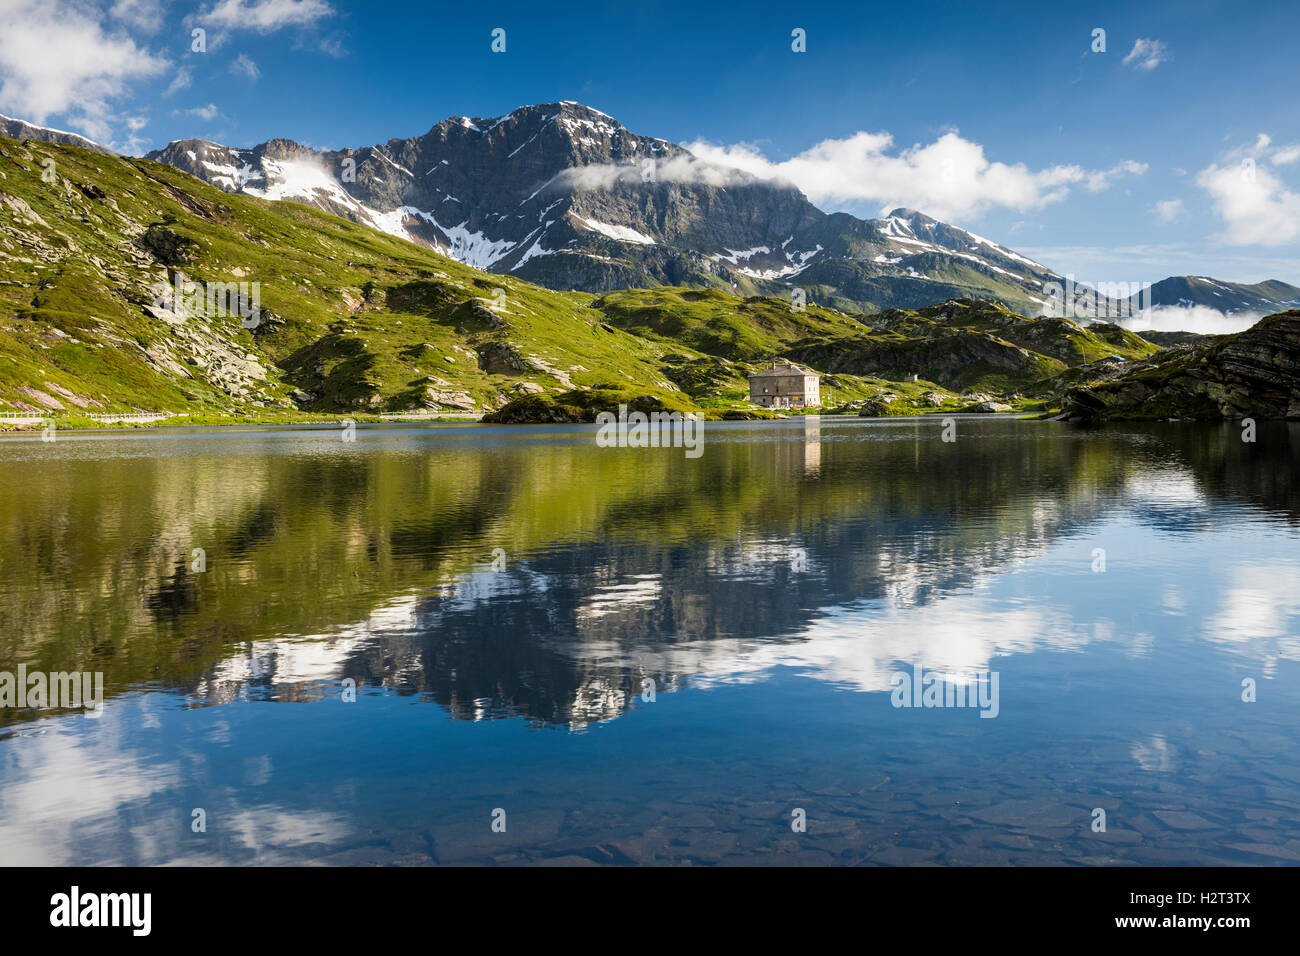 Col de San Bernardino, réflexion de l'eau, France Alpes, Suisse, Canton des Grisons Banque D'Images